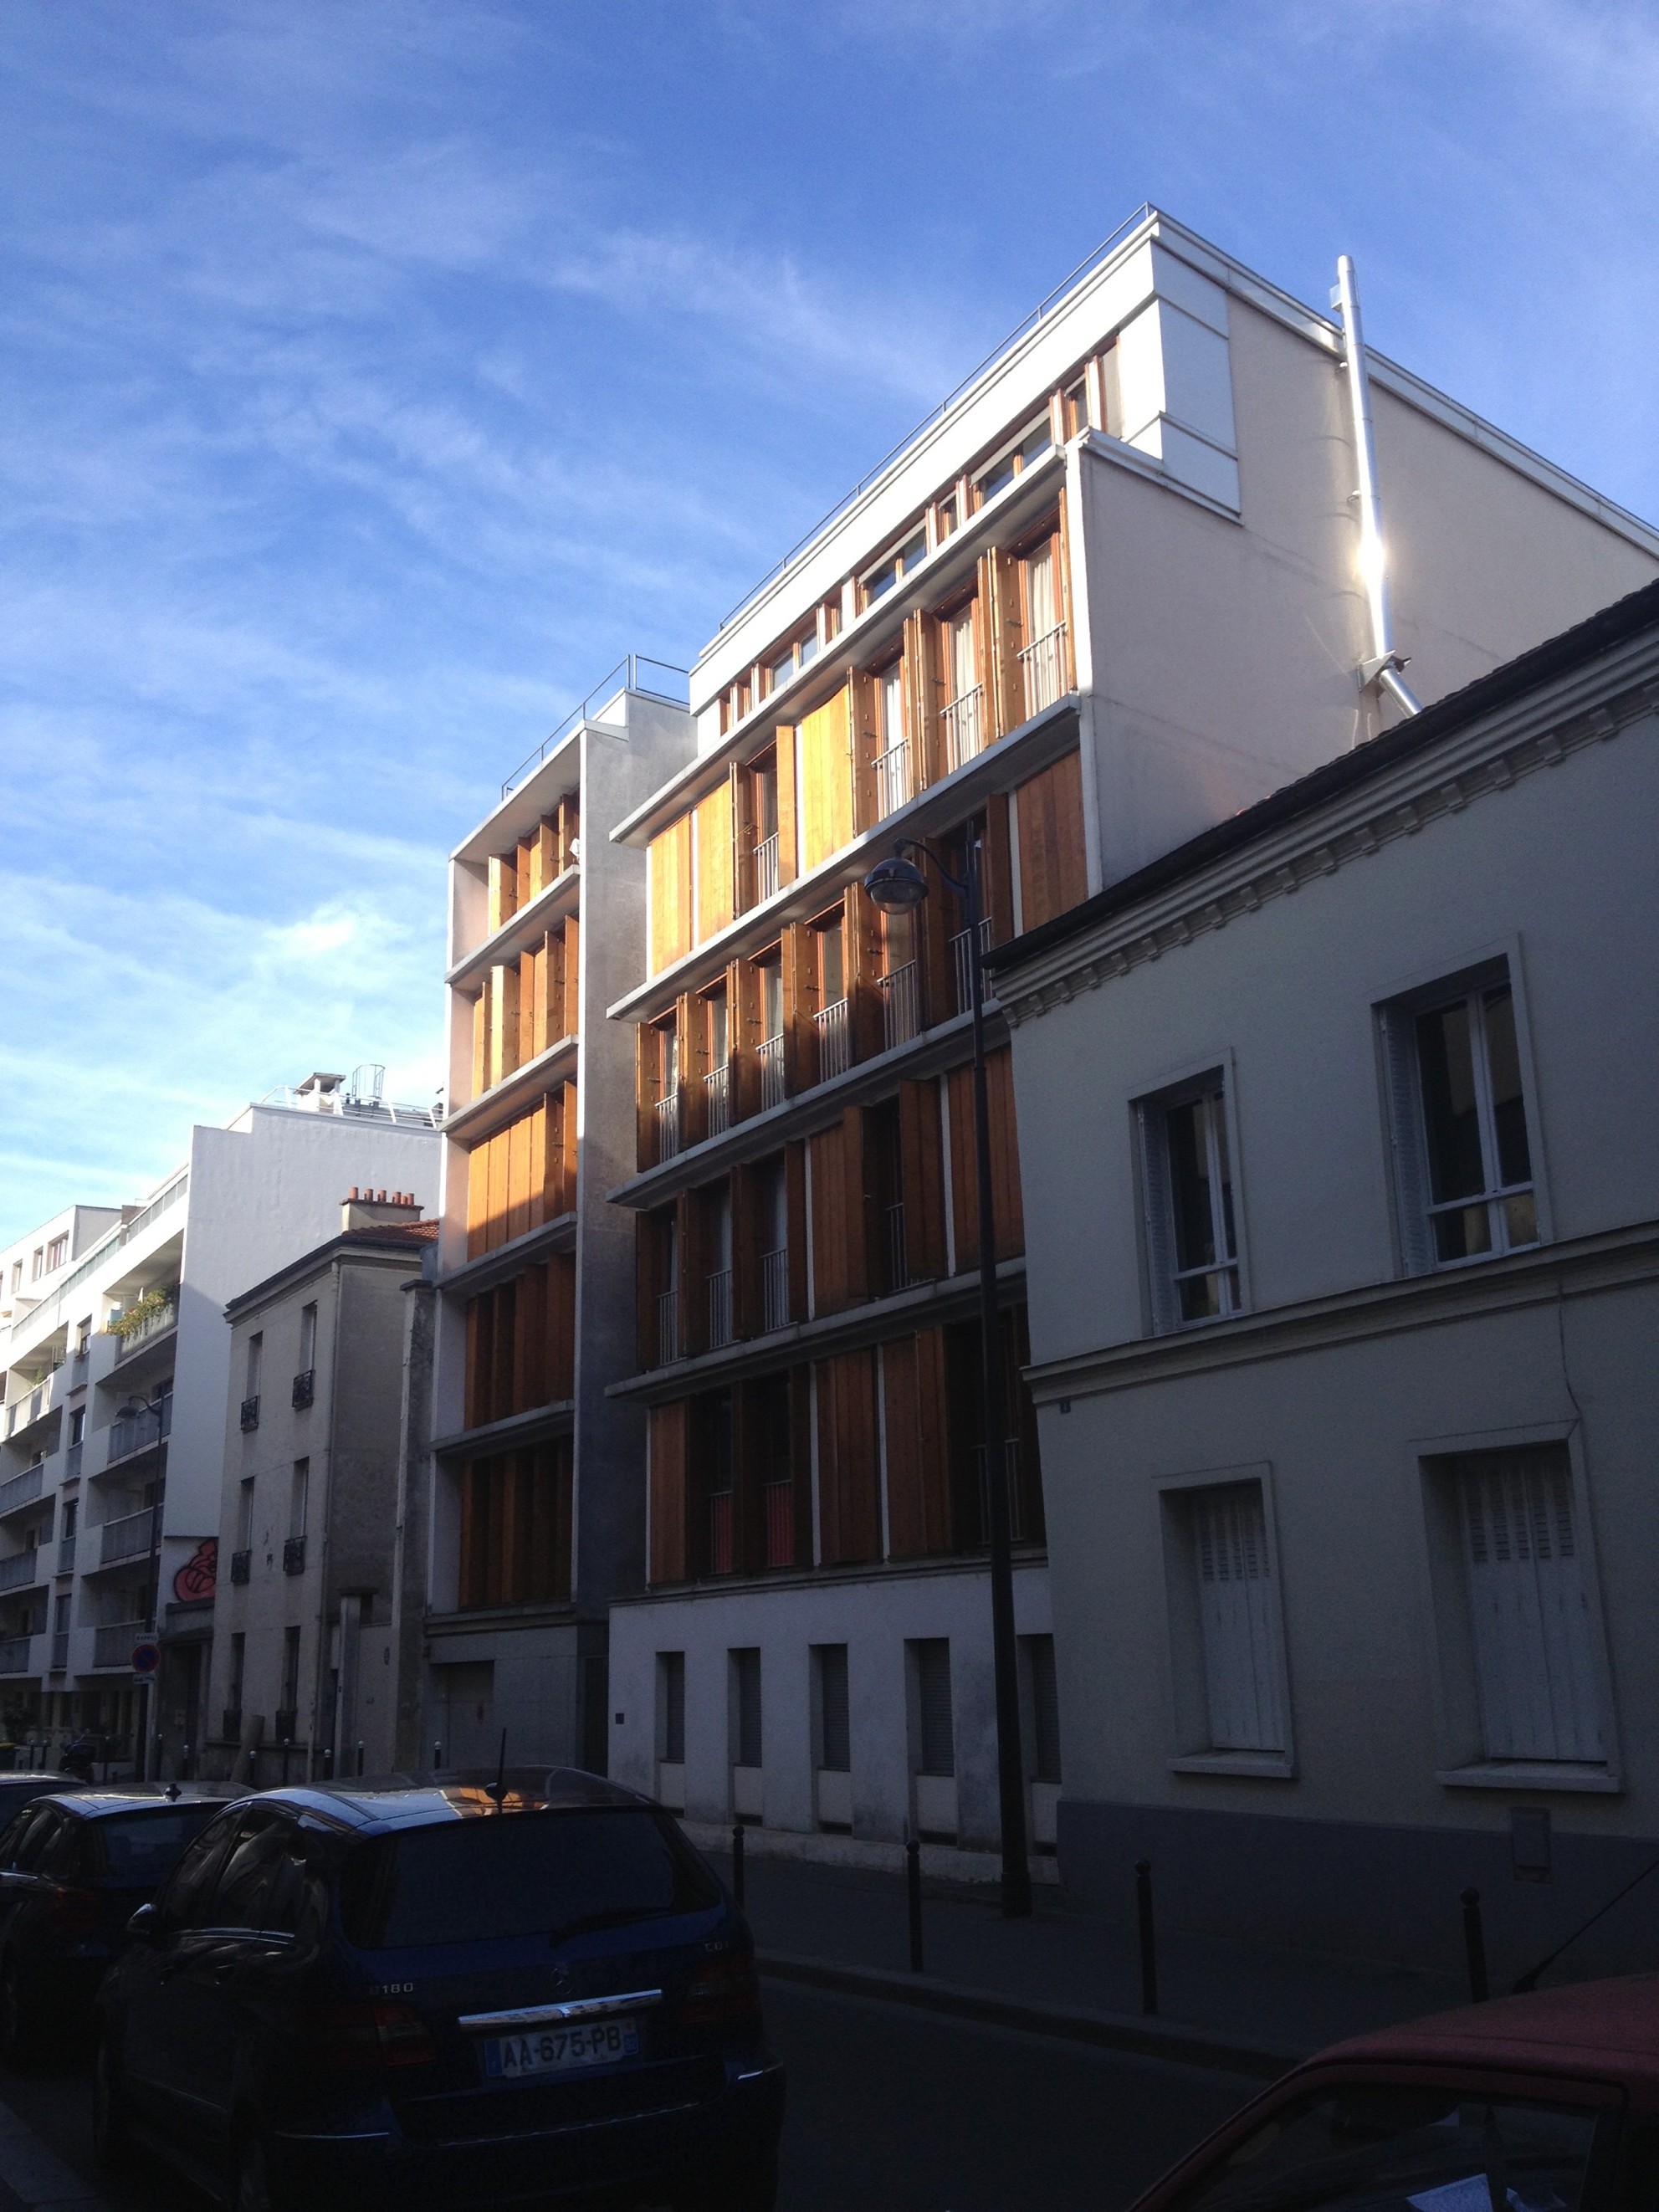 Immeuble de logements<br/>6 rue des Ardennes<br/>par J.Galiano, P.Simon, X.Ténot, 2002